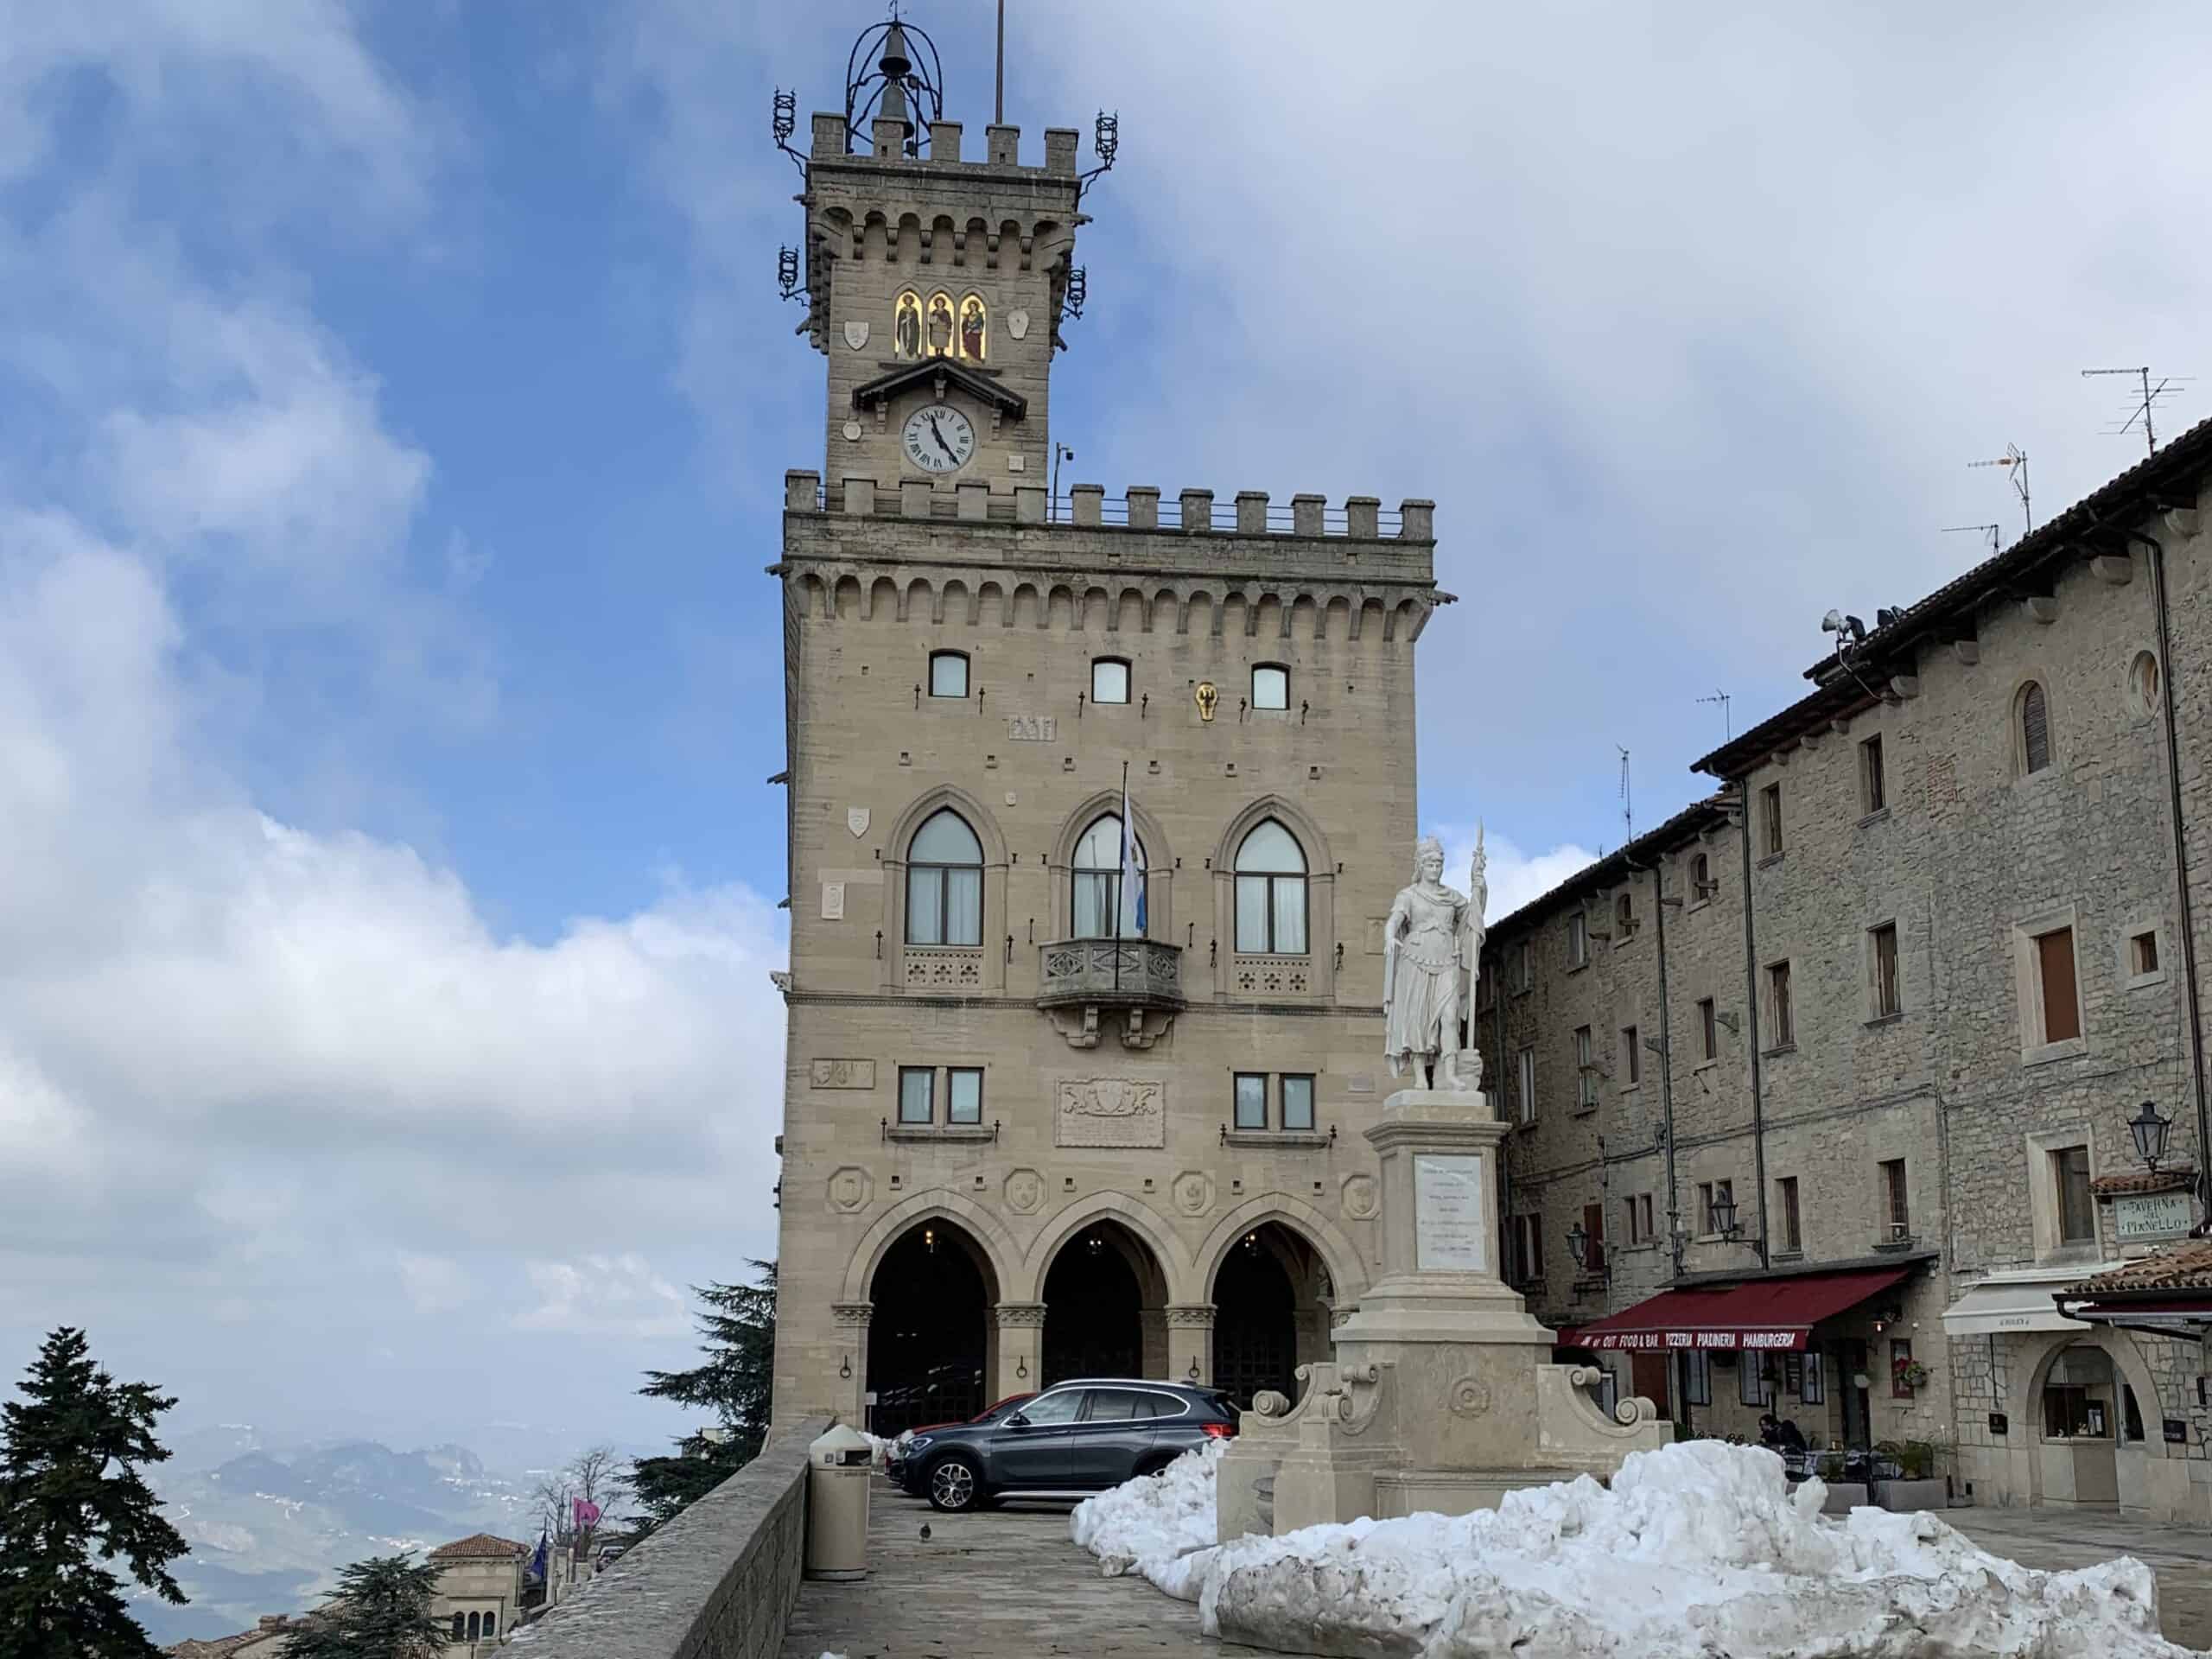 Palazzo Pubblico – City of San Marino